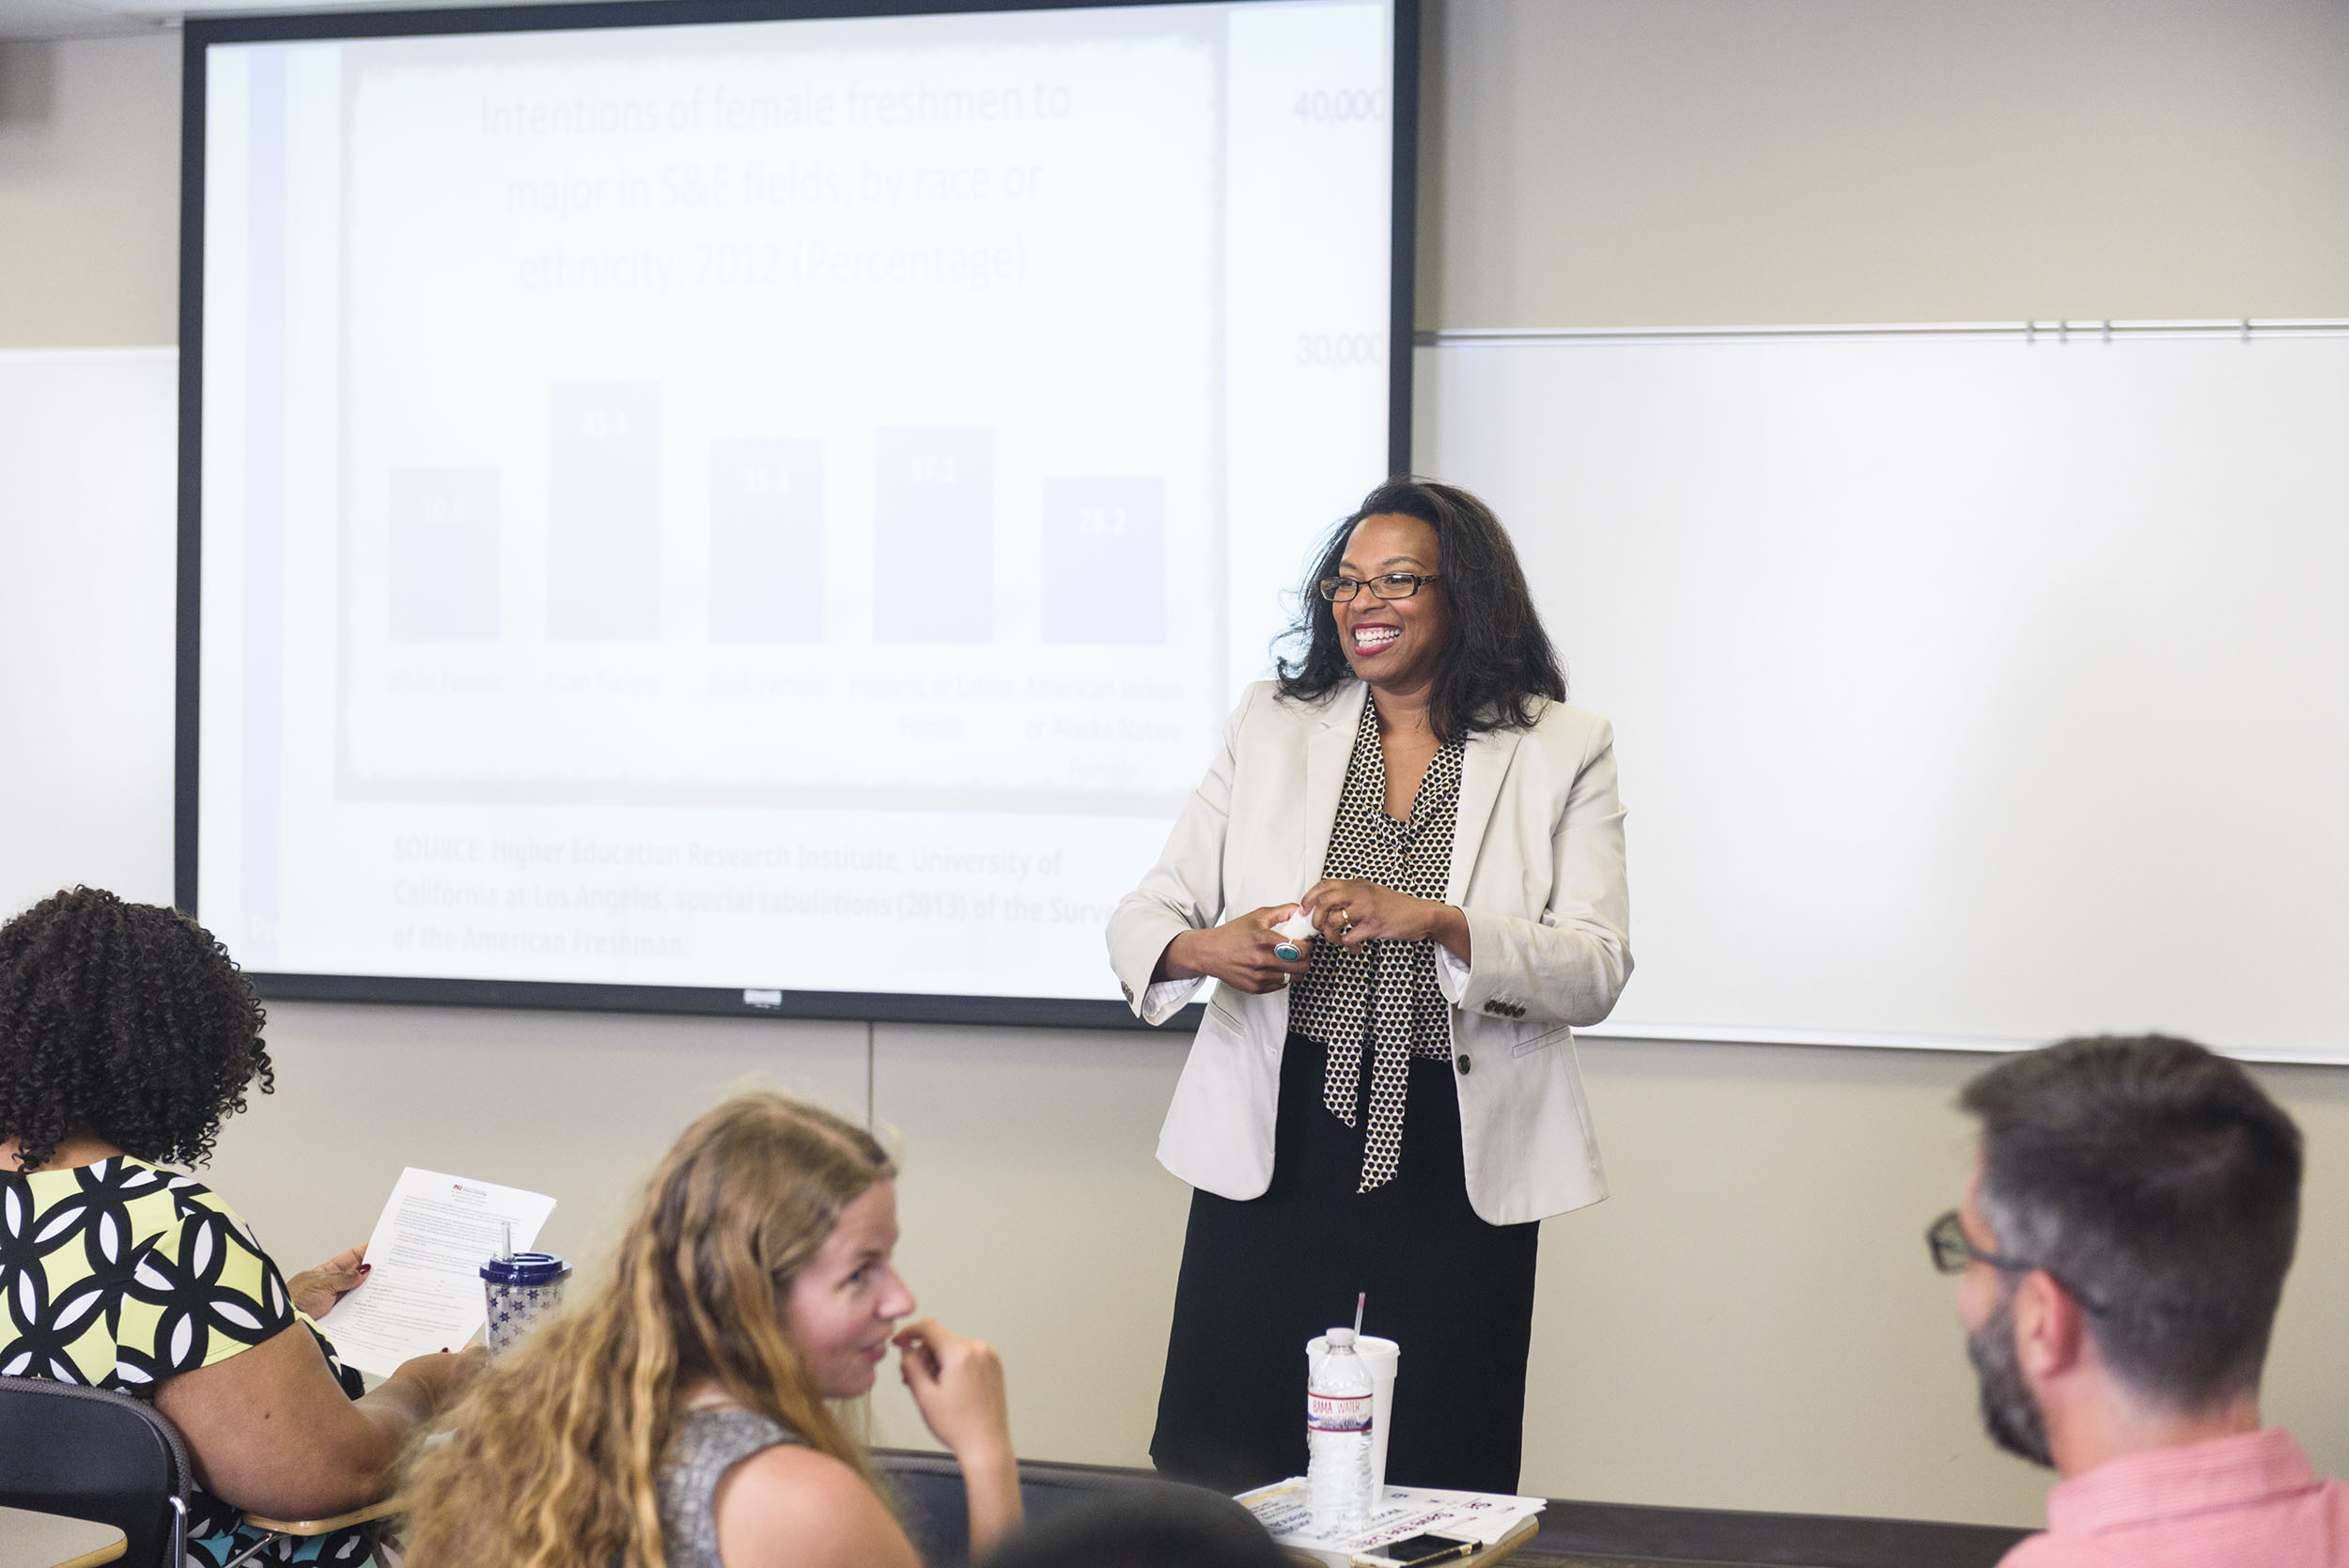 UA Workshop Supports Minority Women Studying in STEM Fields